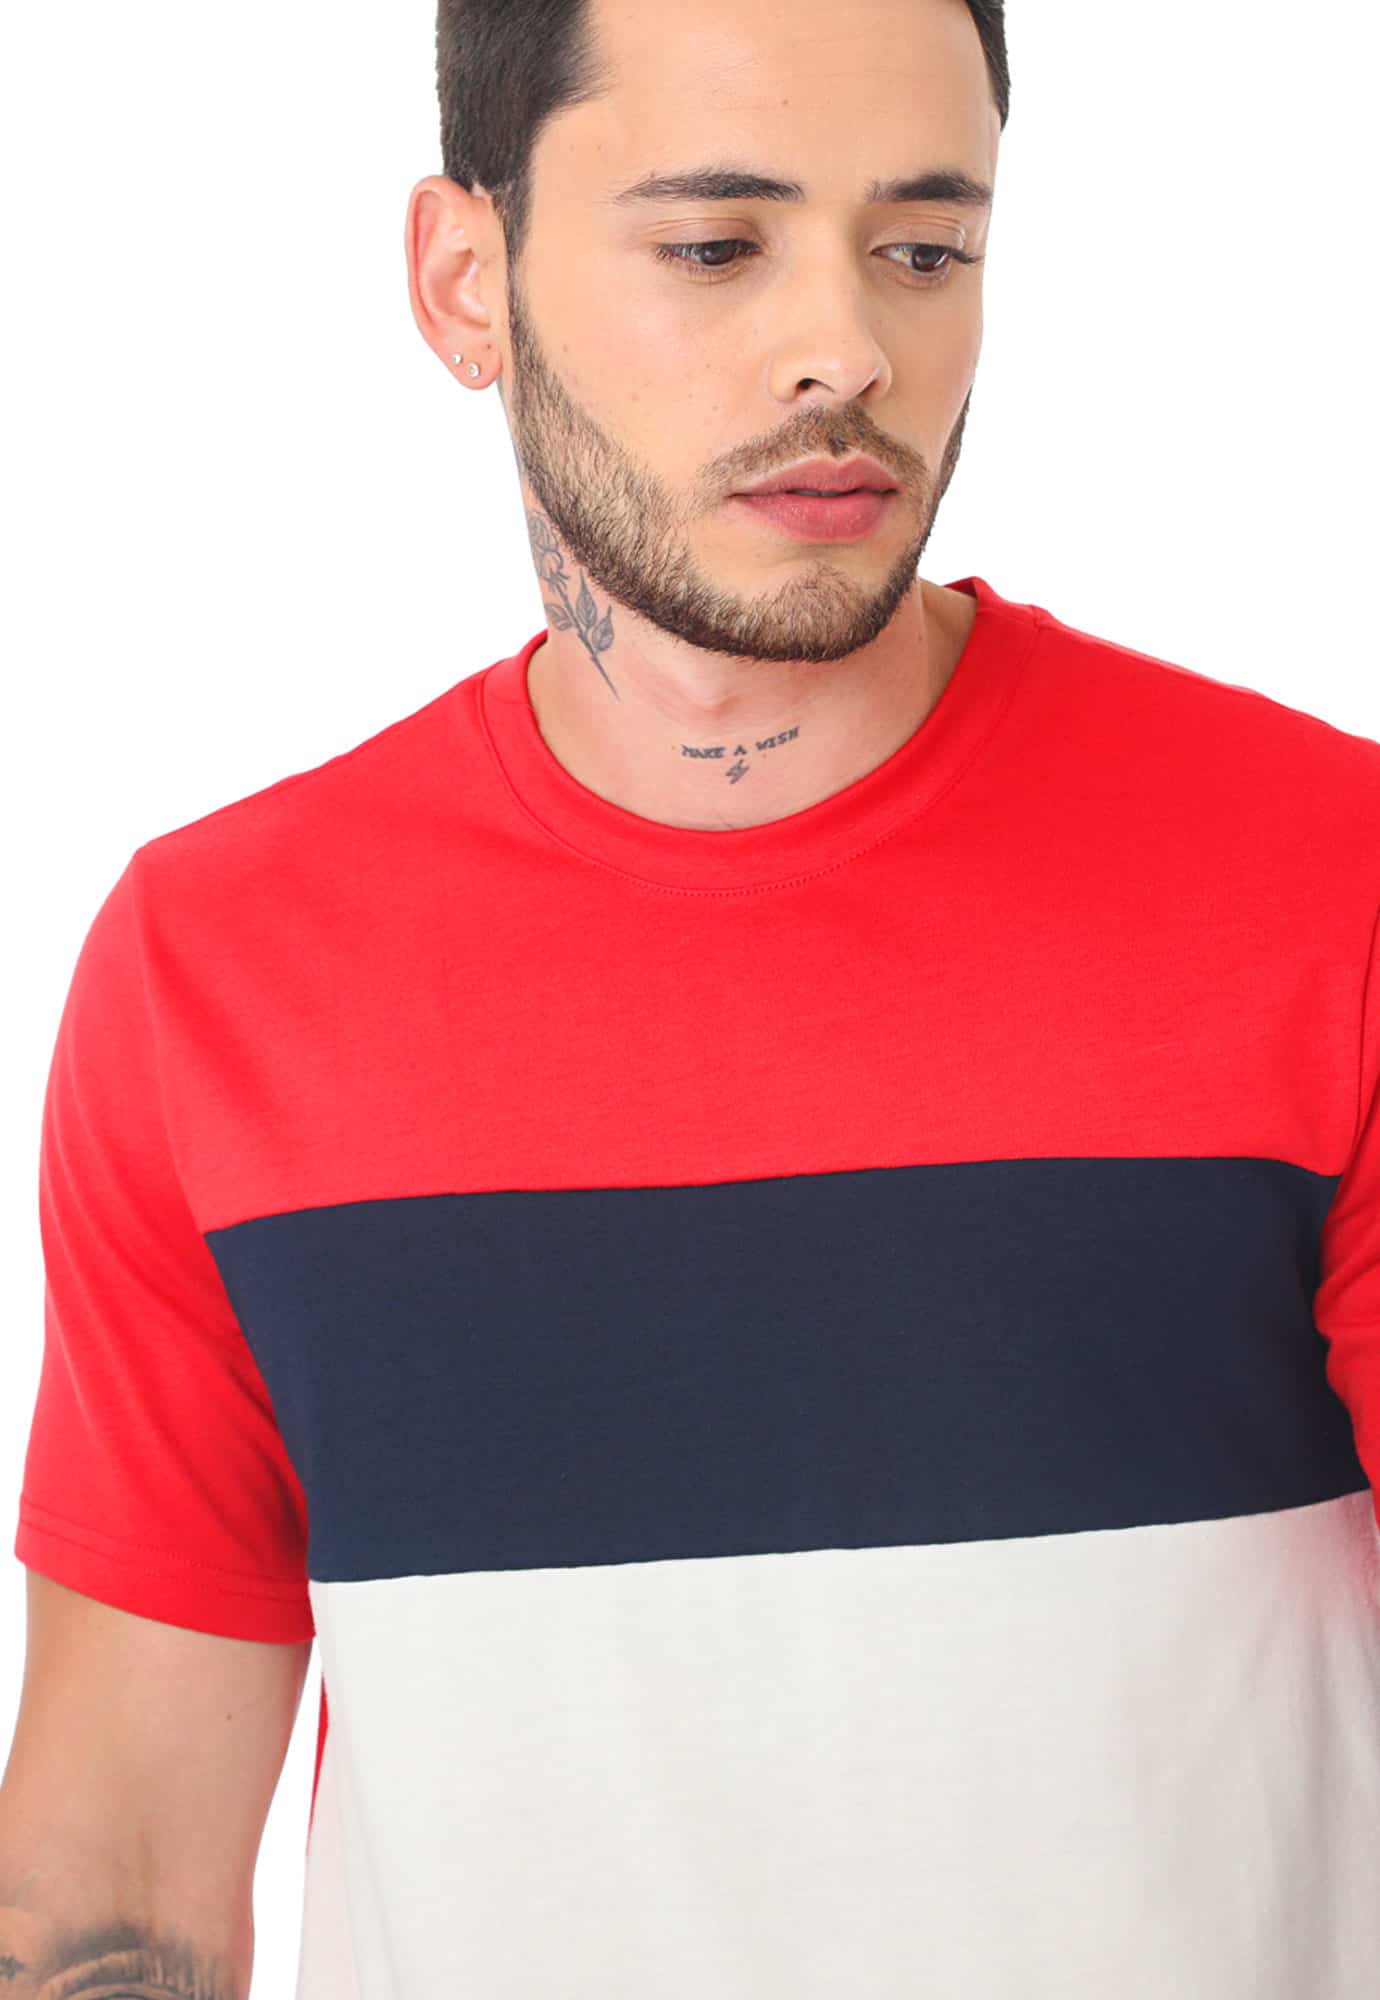 Camiseta rojo manga corta, con bloques en contraste y cuello redondo para hombre